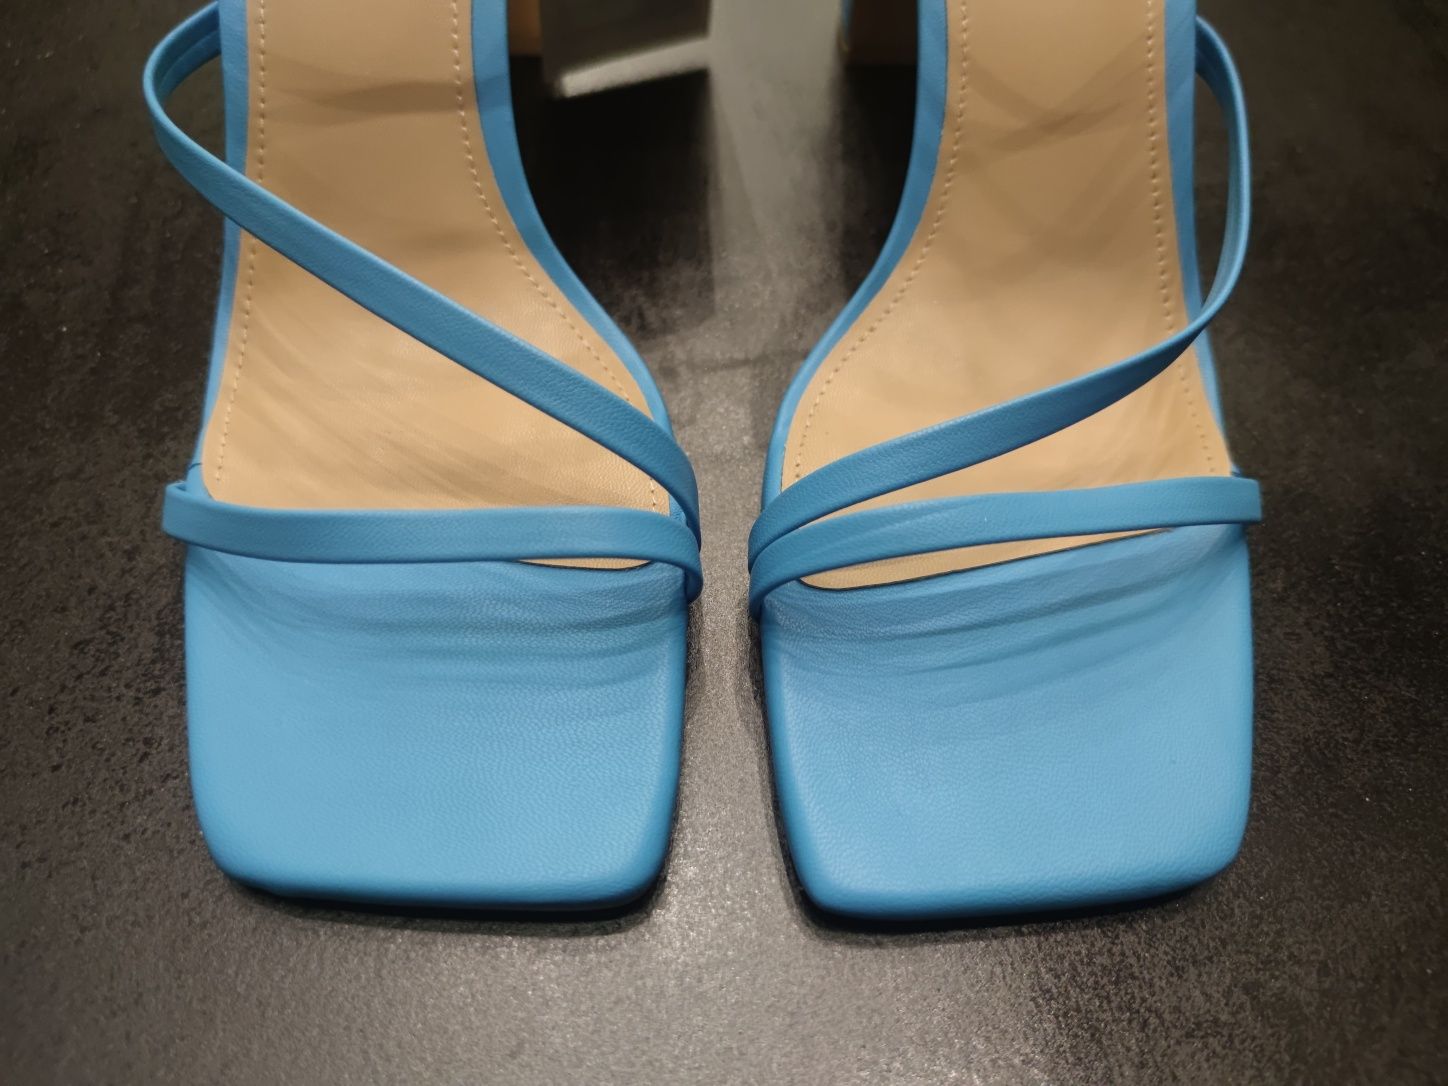 Sandały H&M w ślicznym niebieskim kolorze. WyprzedaneWsklepachIonline!